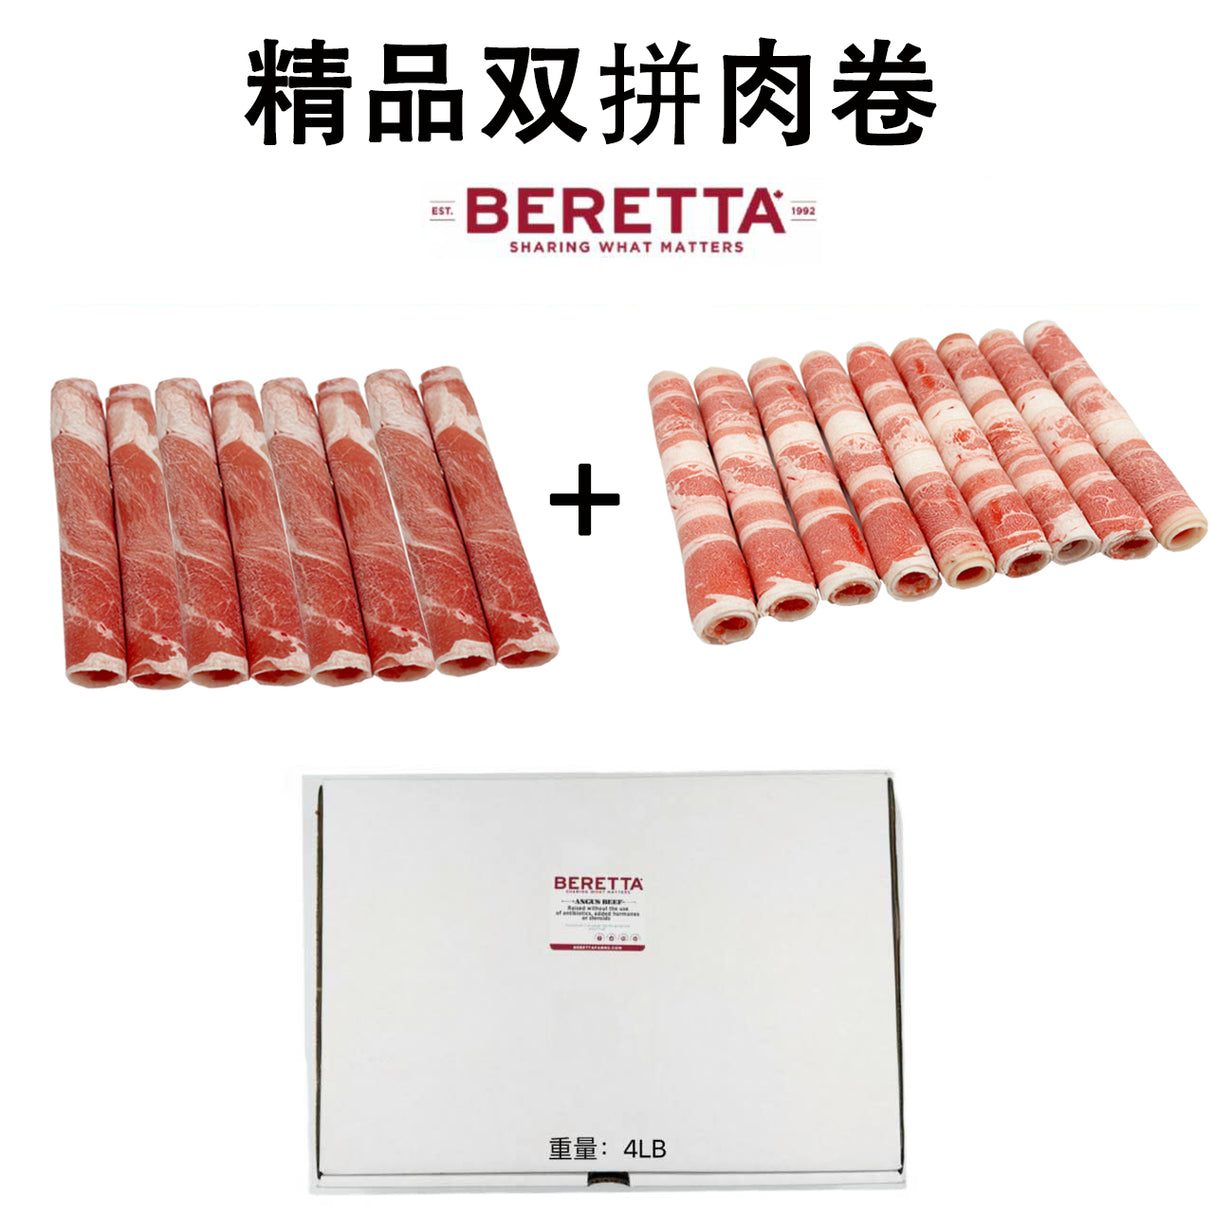 ❄️【BERETTA】精品牛羊捲雙拼1盒4磅